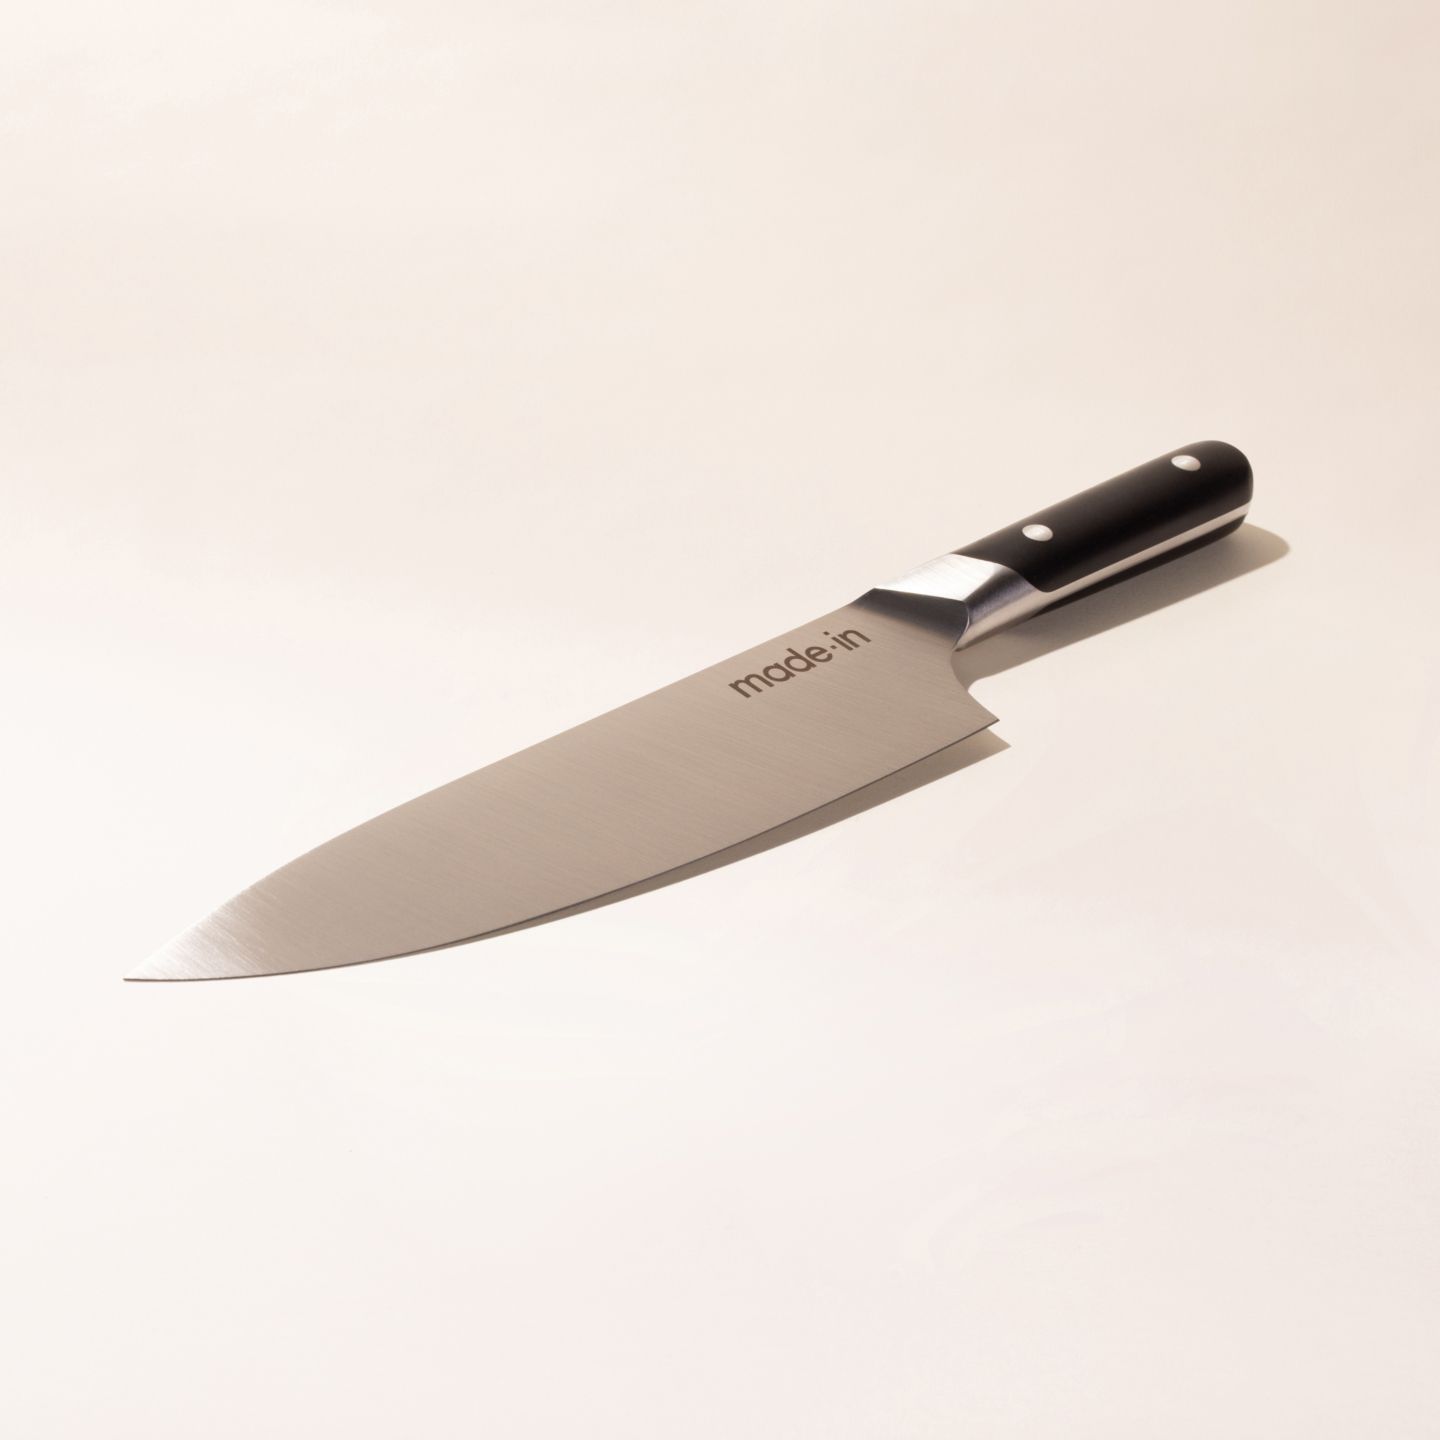 8-Inch Western Chef Knife, G-Fusion